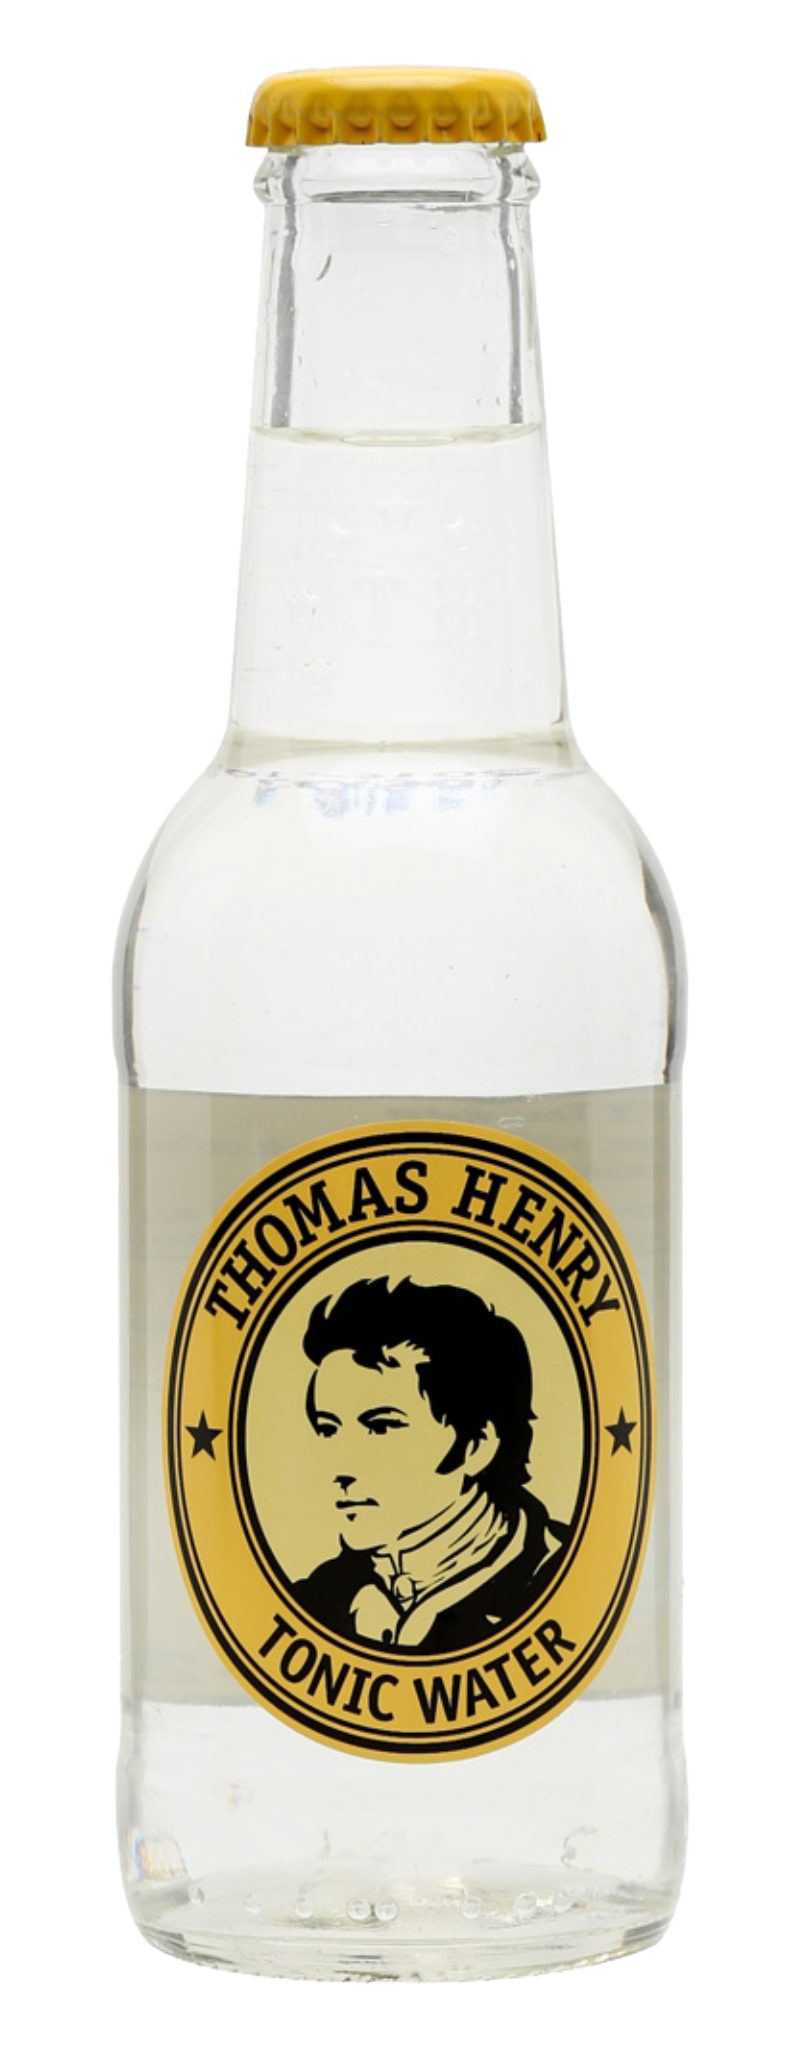 Thomas Henry Tonic Water (thùng 24 chai)  - 200ml